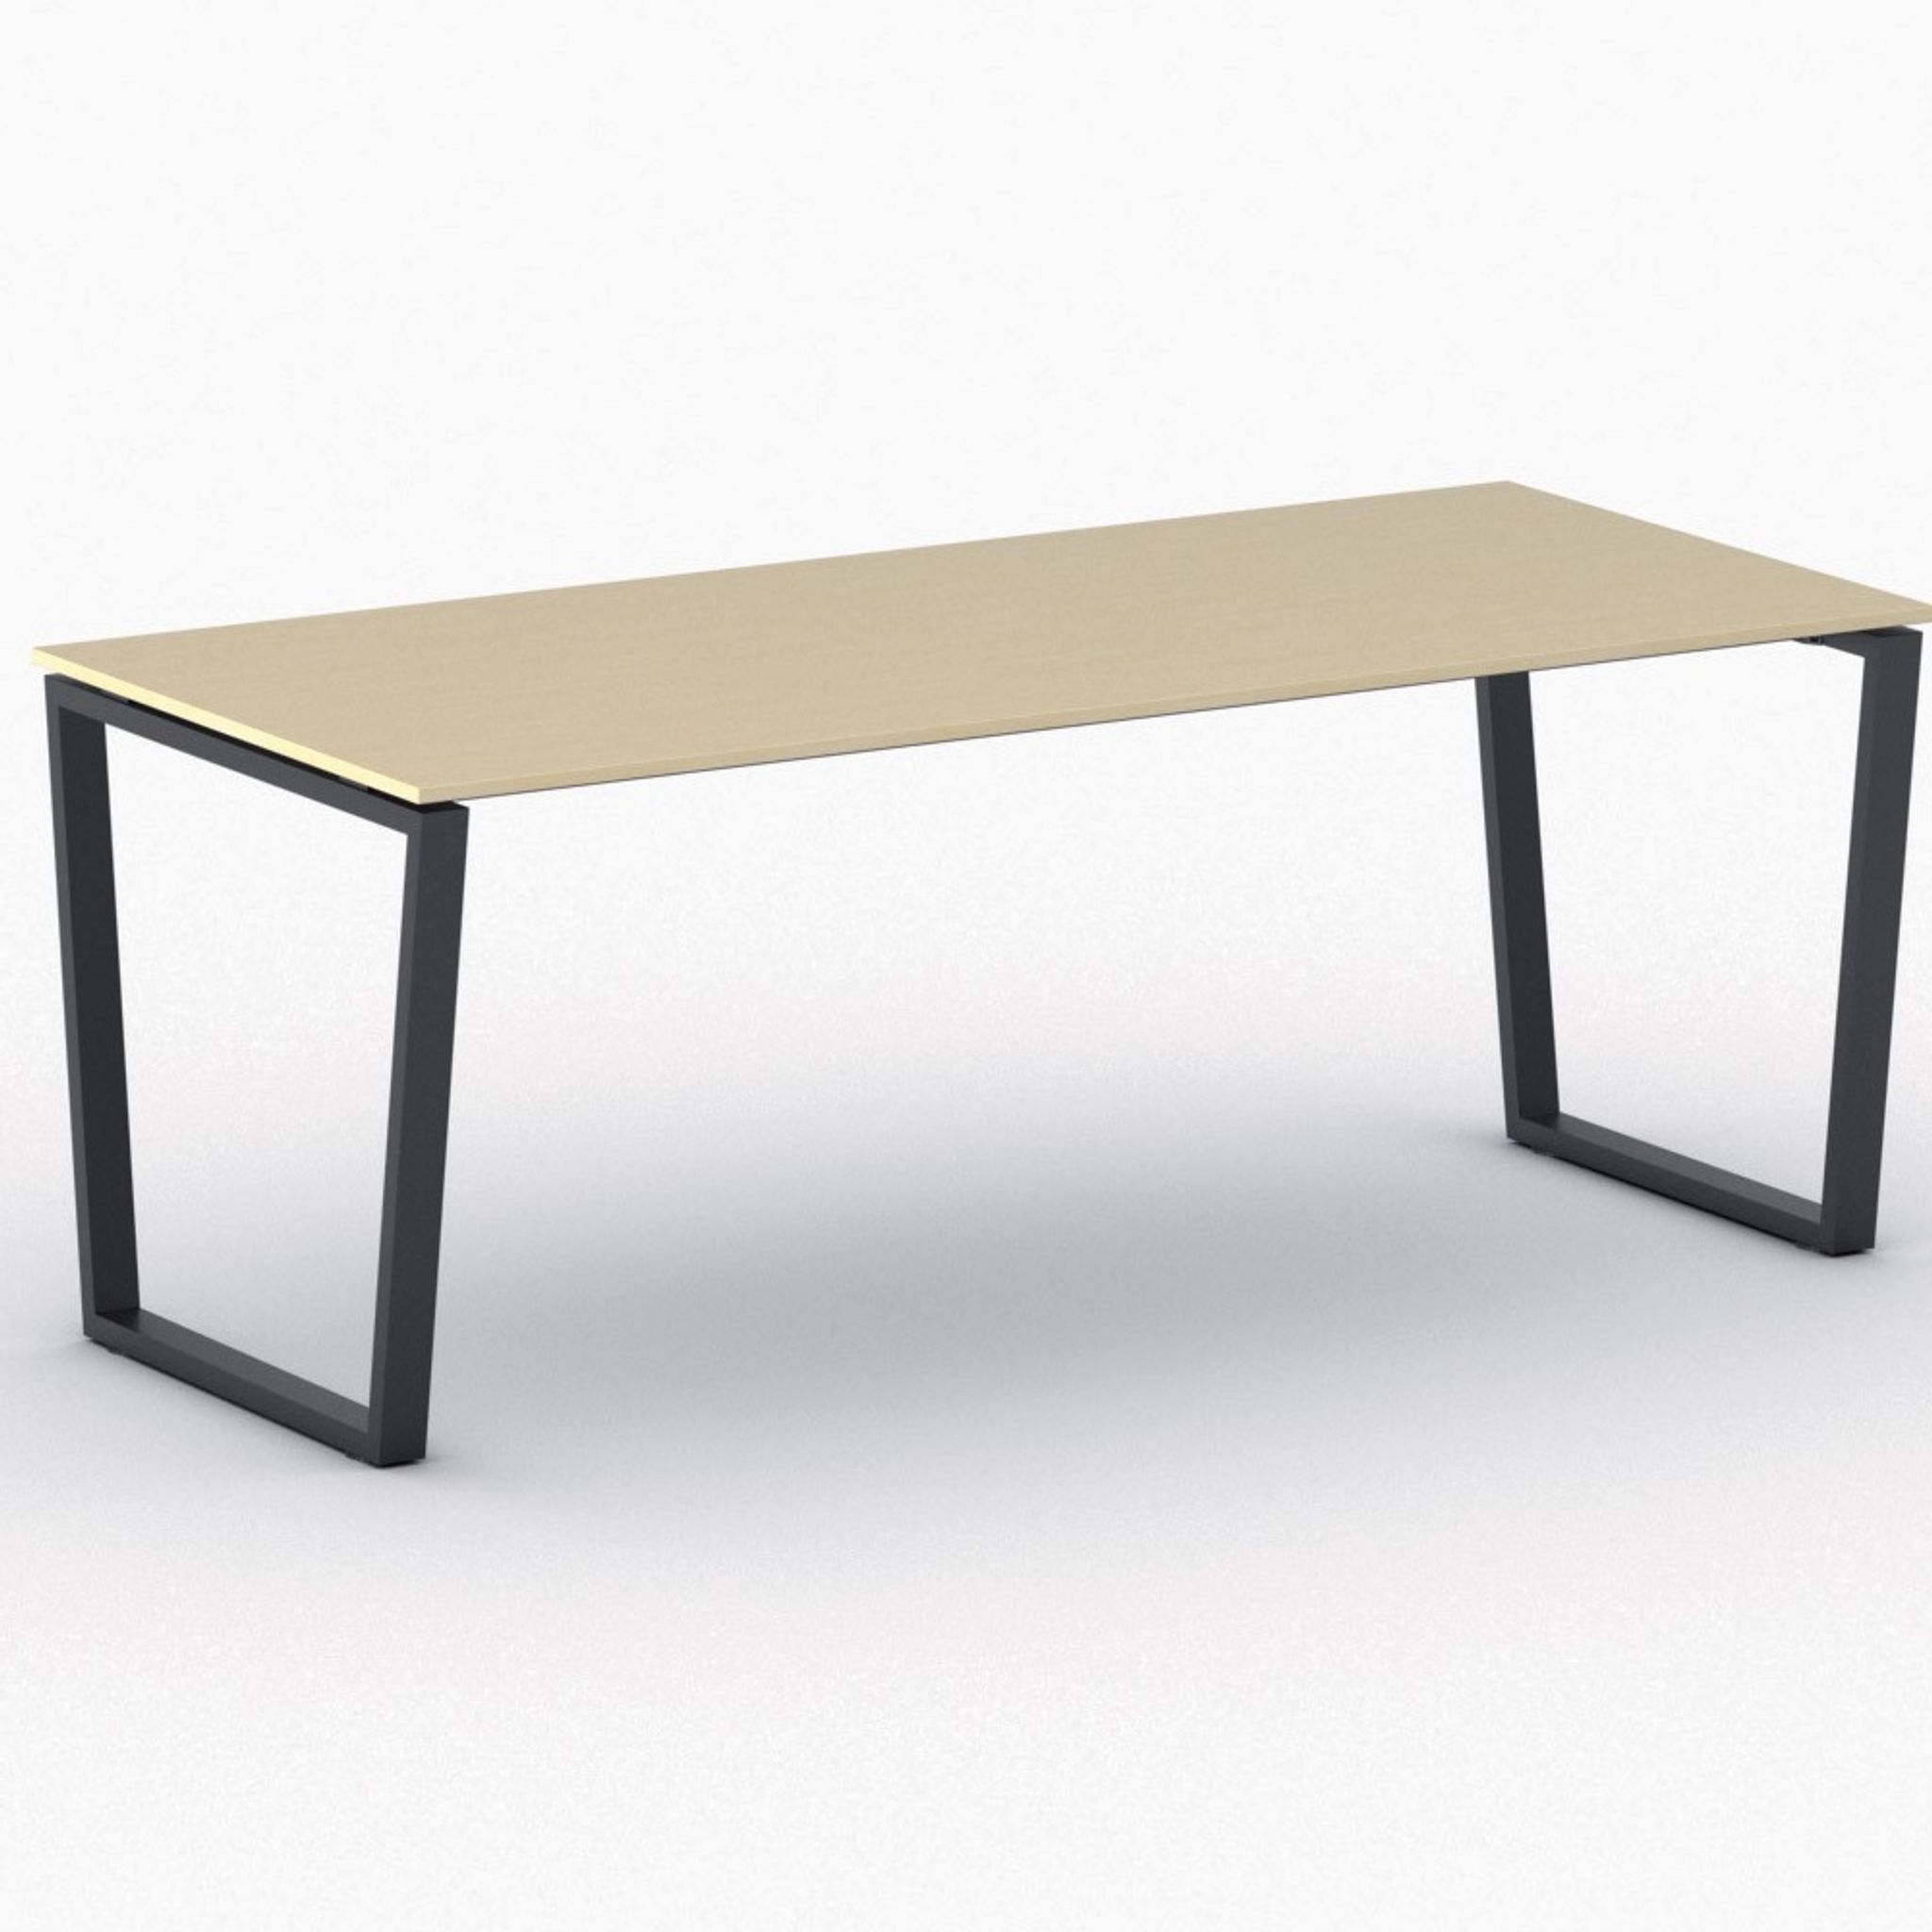 Kancelársky stôl PRIMO IMPRESS, čierna podnož, 2000 x 900 mm, breza